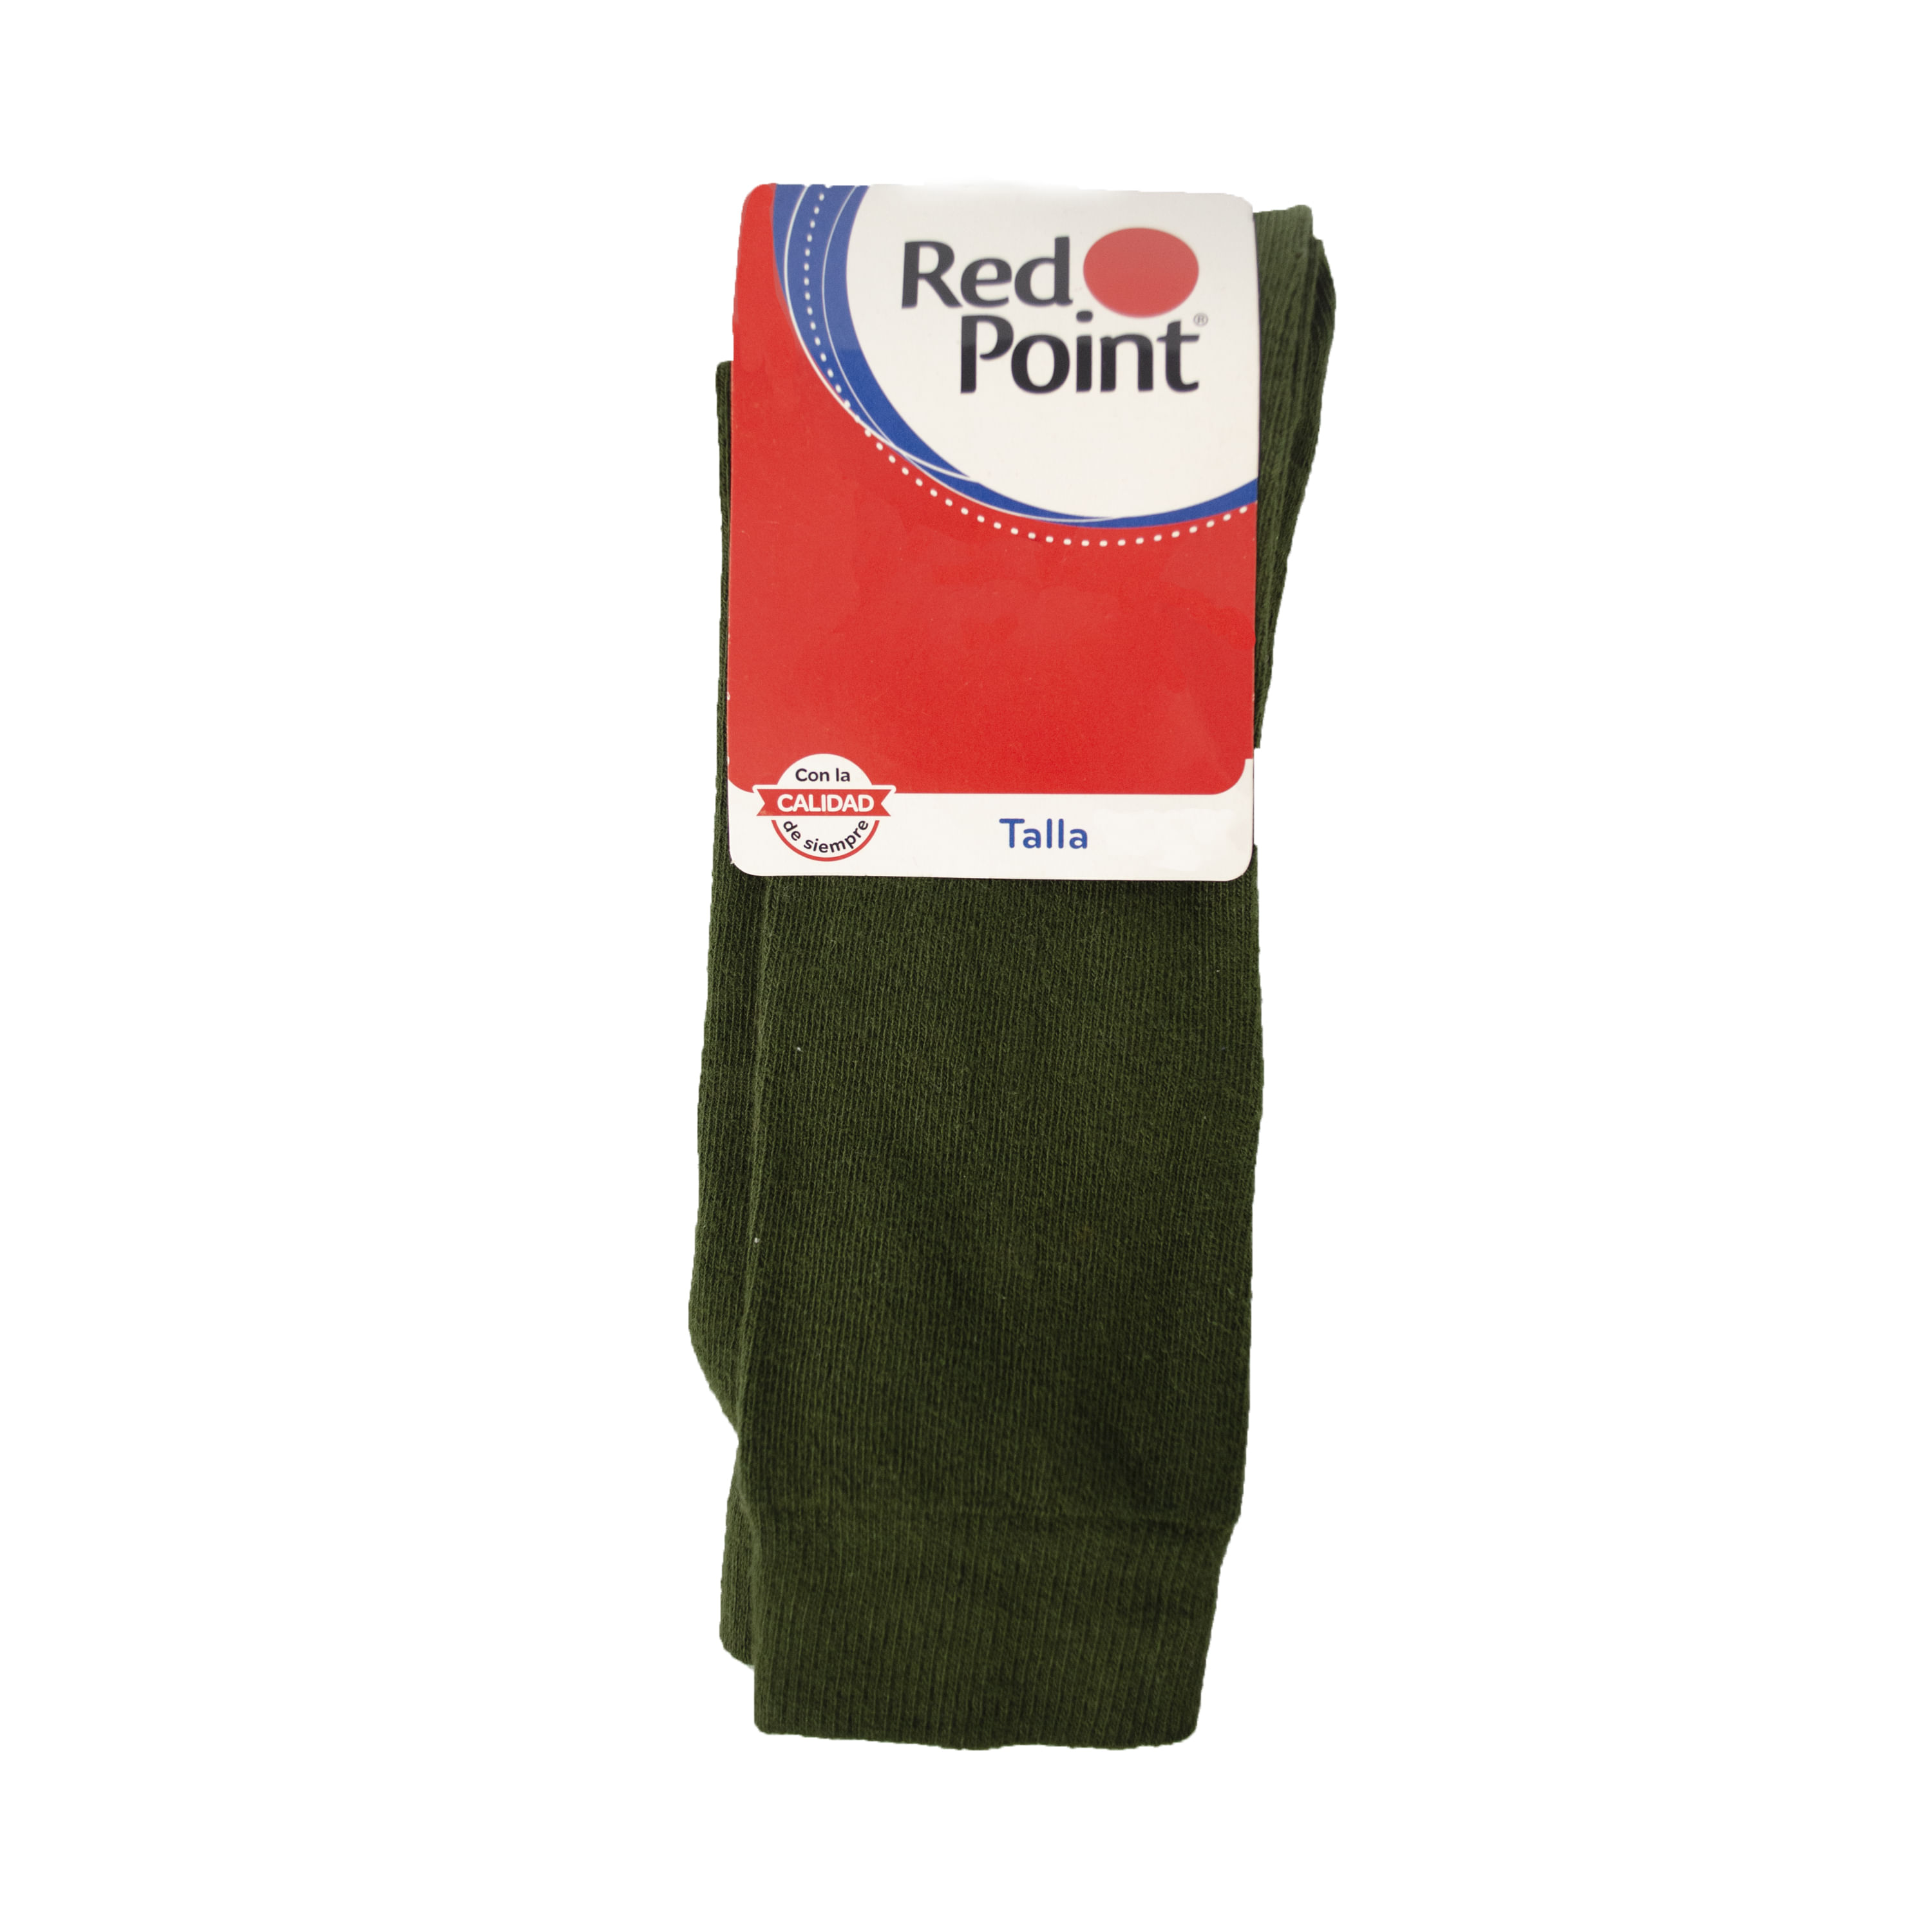 Red Point - Necesitas medias blancas para la entrada a